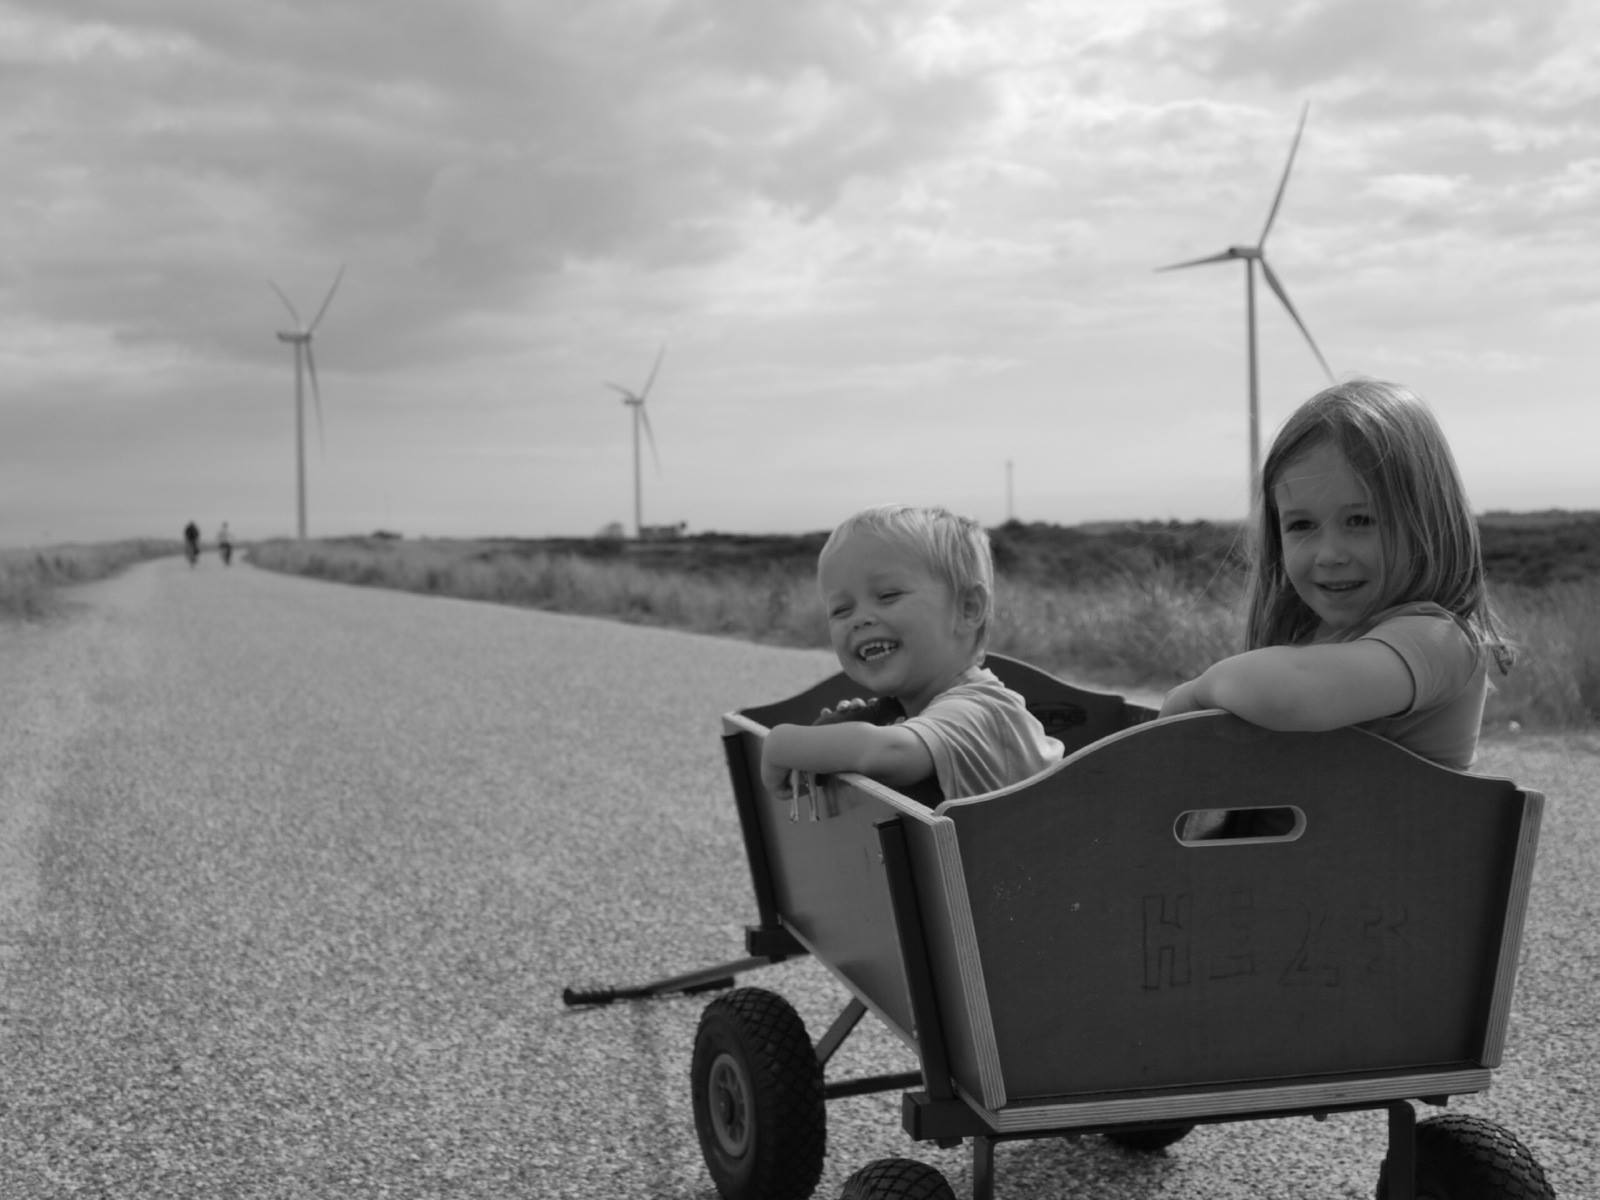 twee kindjes in een kar met windmolens op de achtergrond